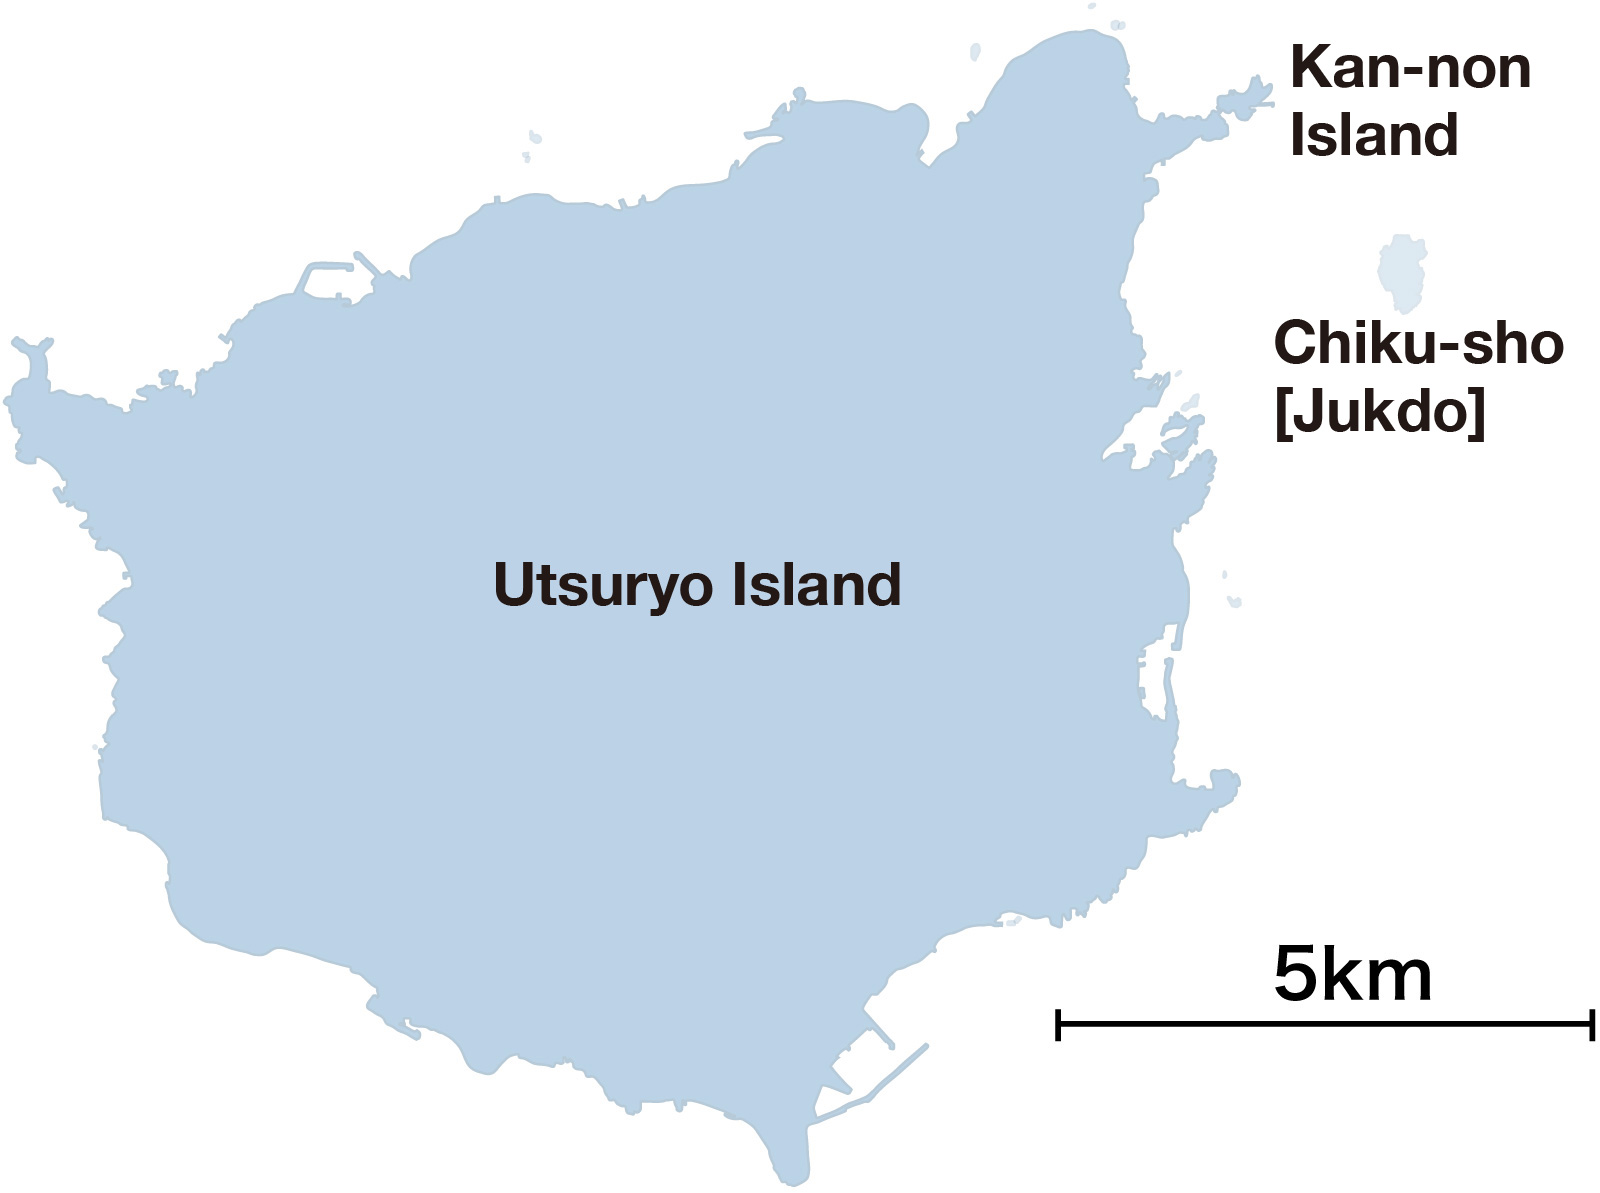 Utsuryo Island